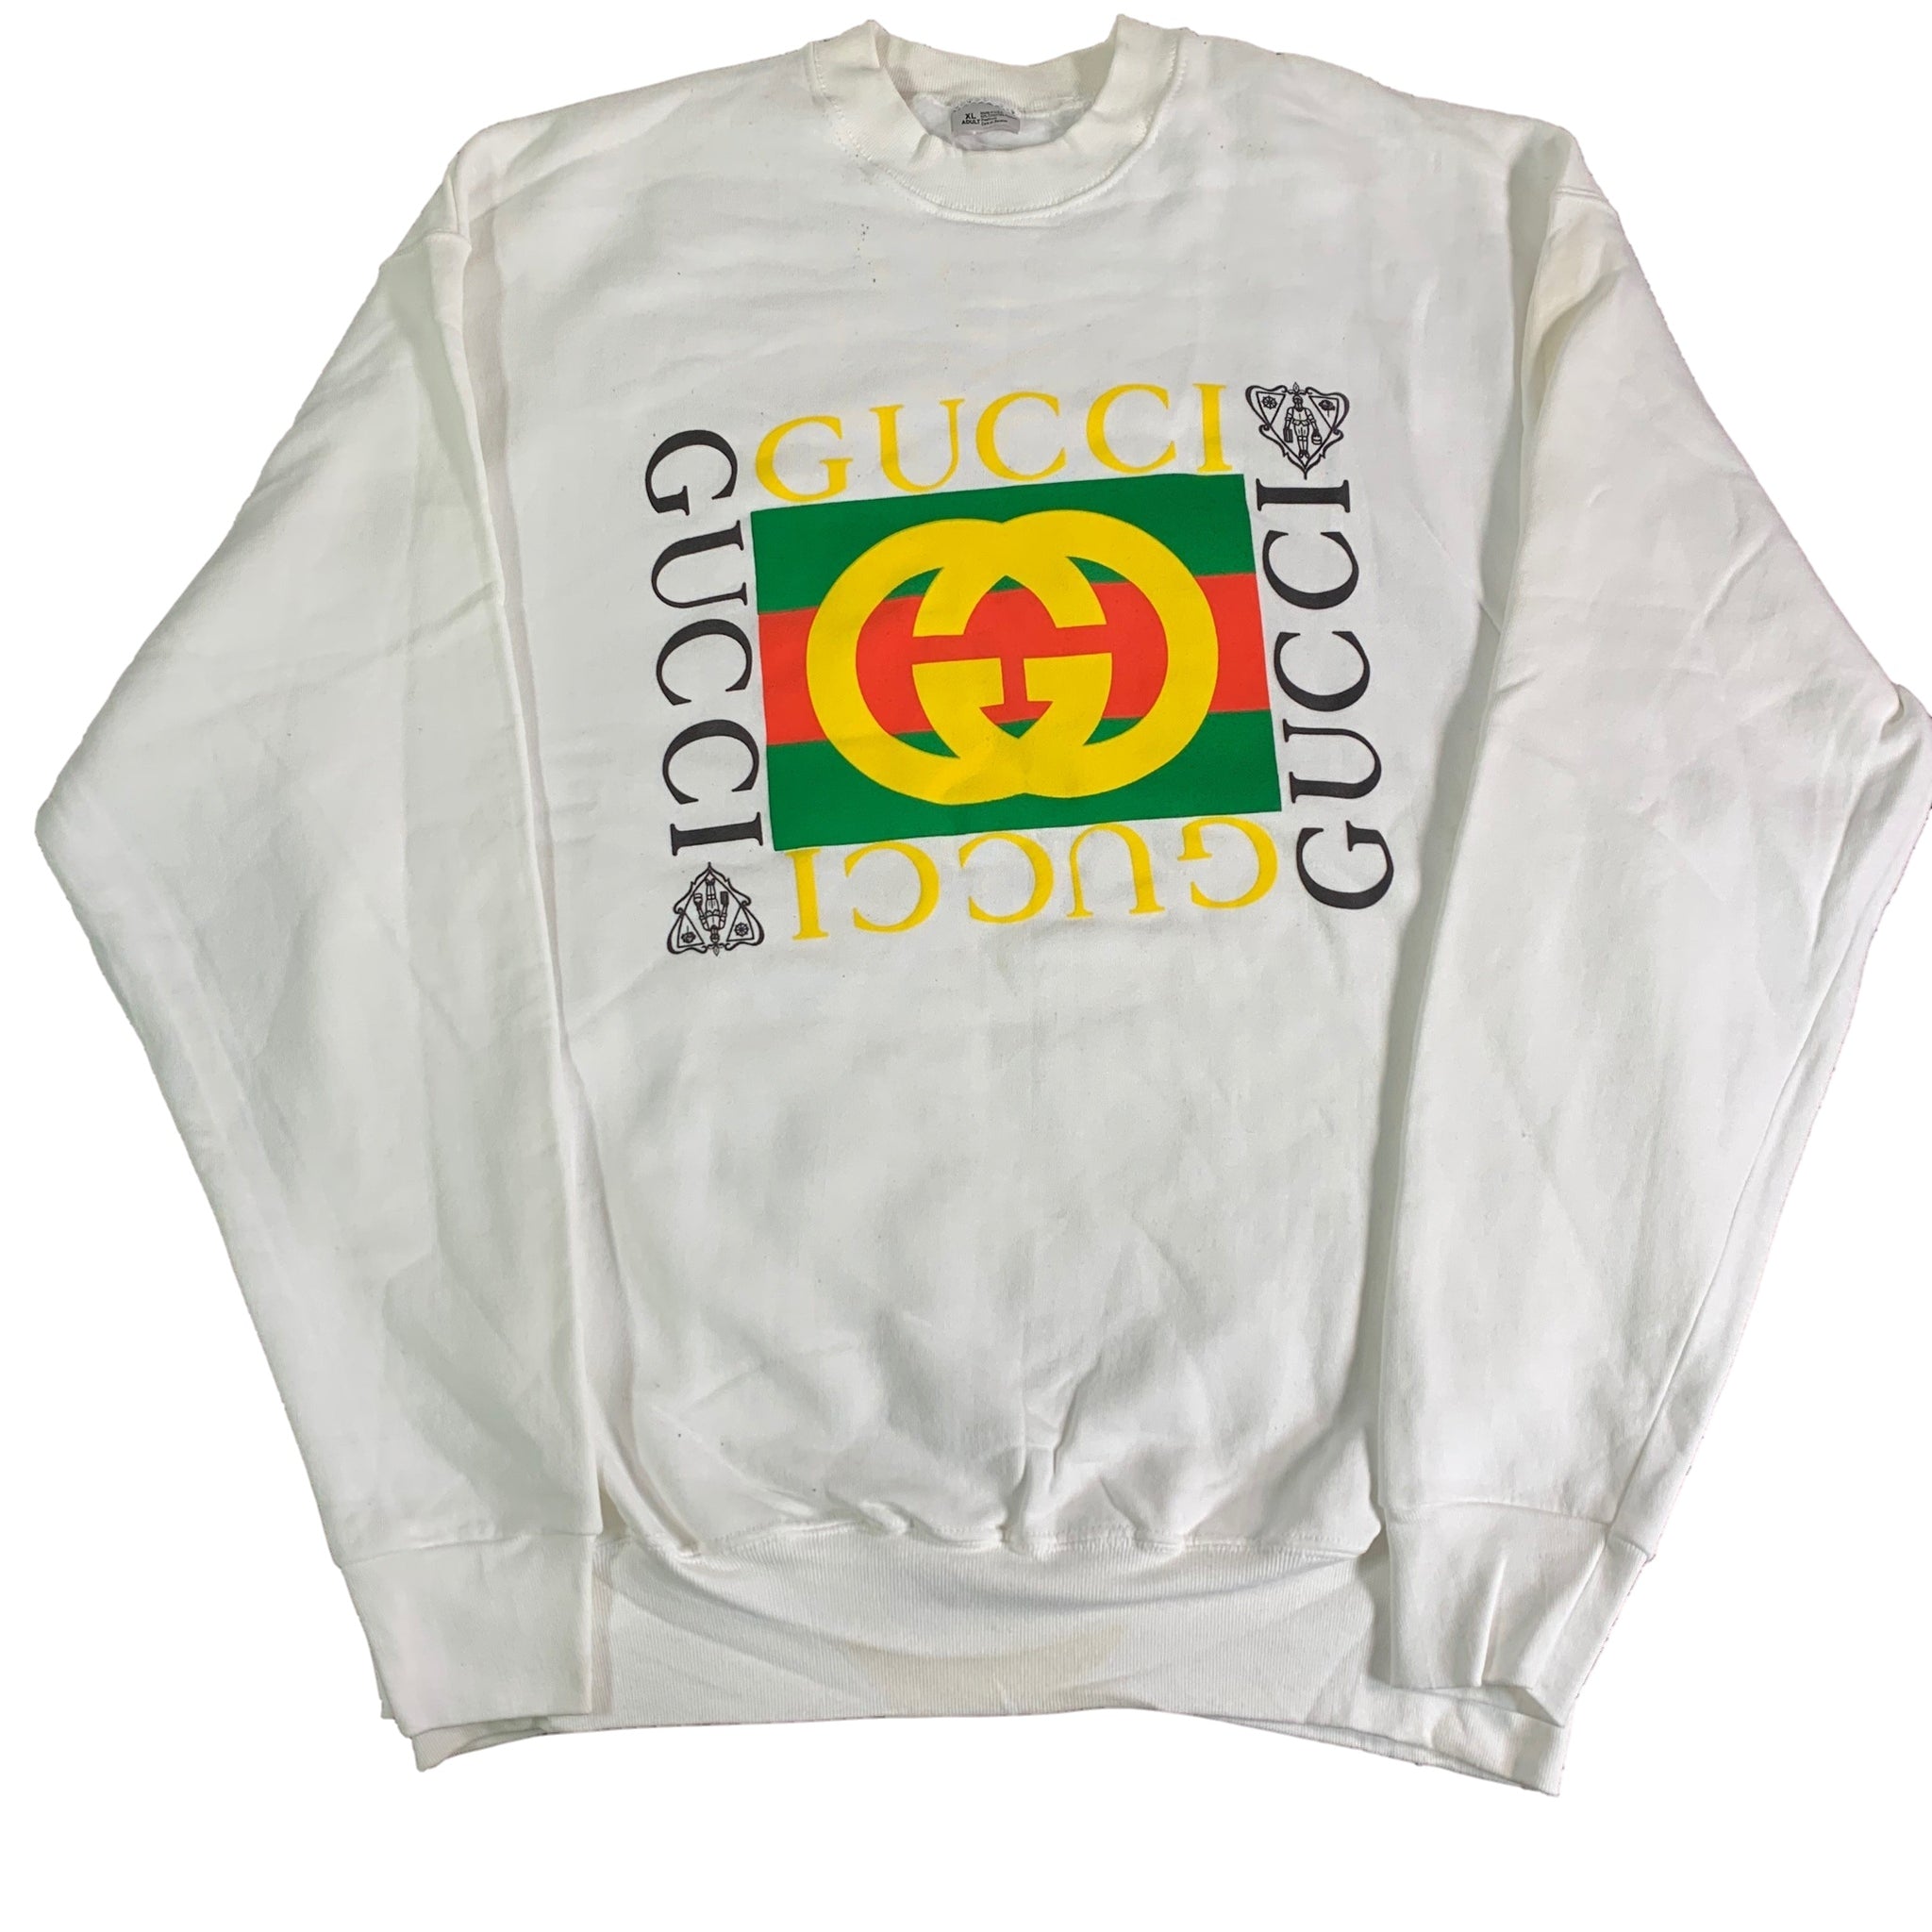 Gucci "Bootleg" Crewneck Sweatshirt | jointcustodydc